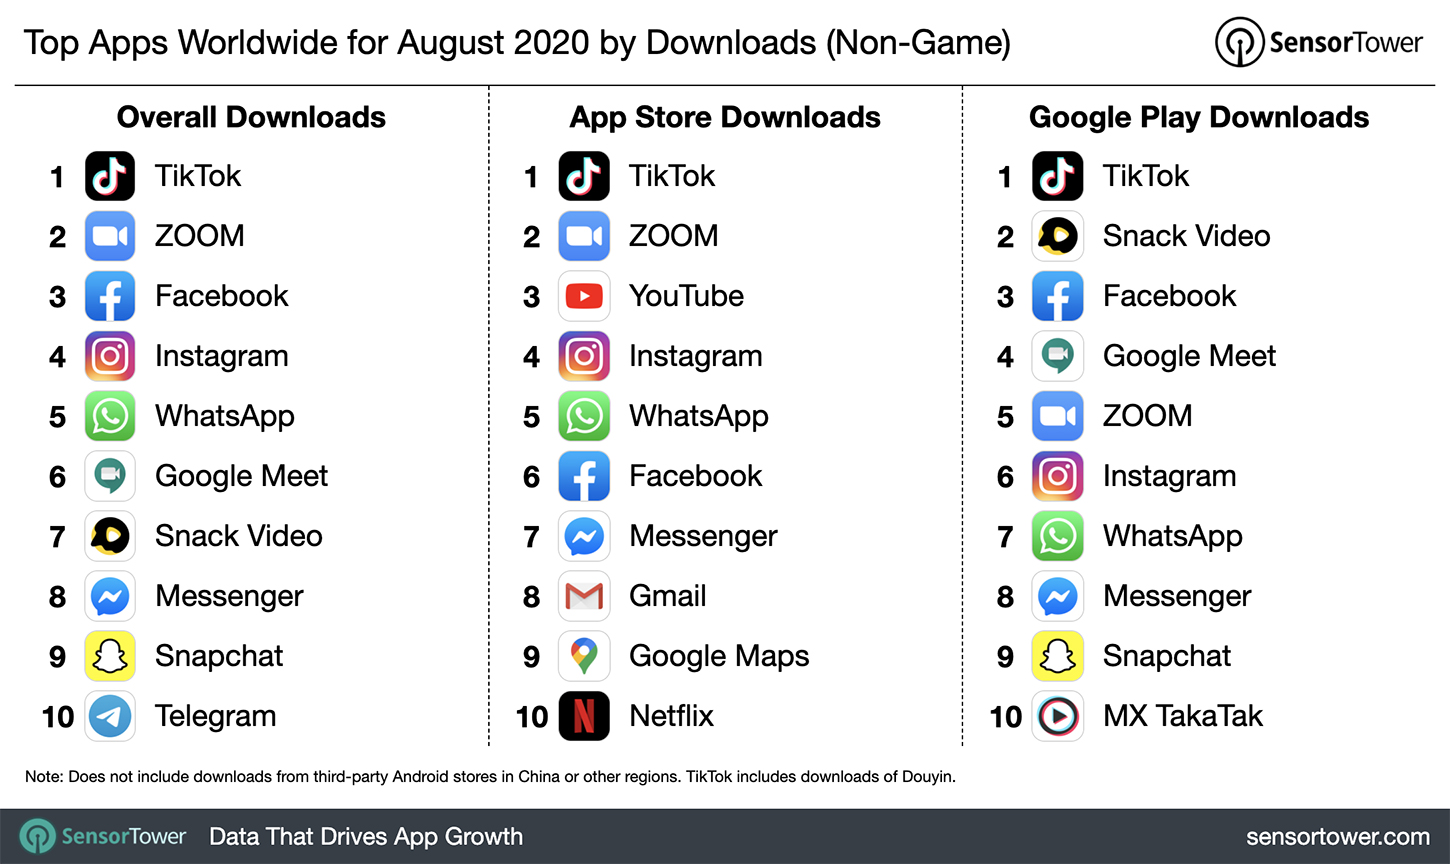 tiktok leads social app downloads again in august